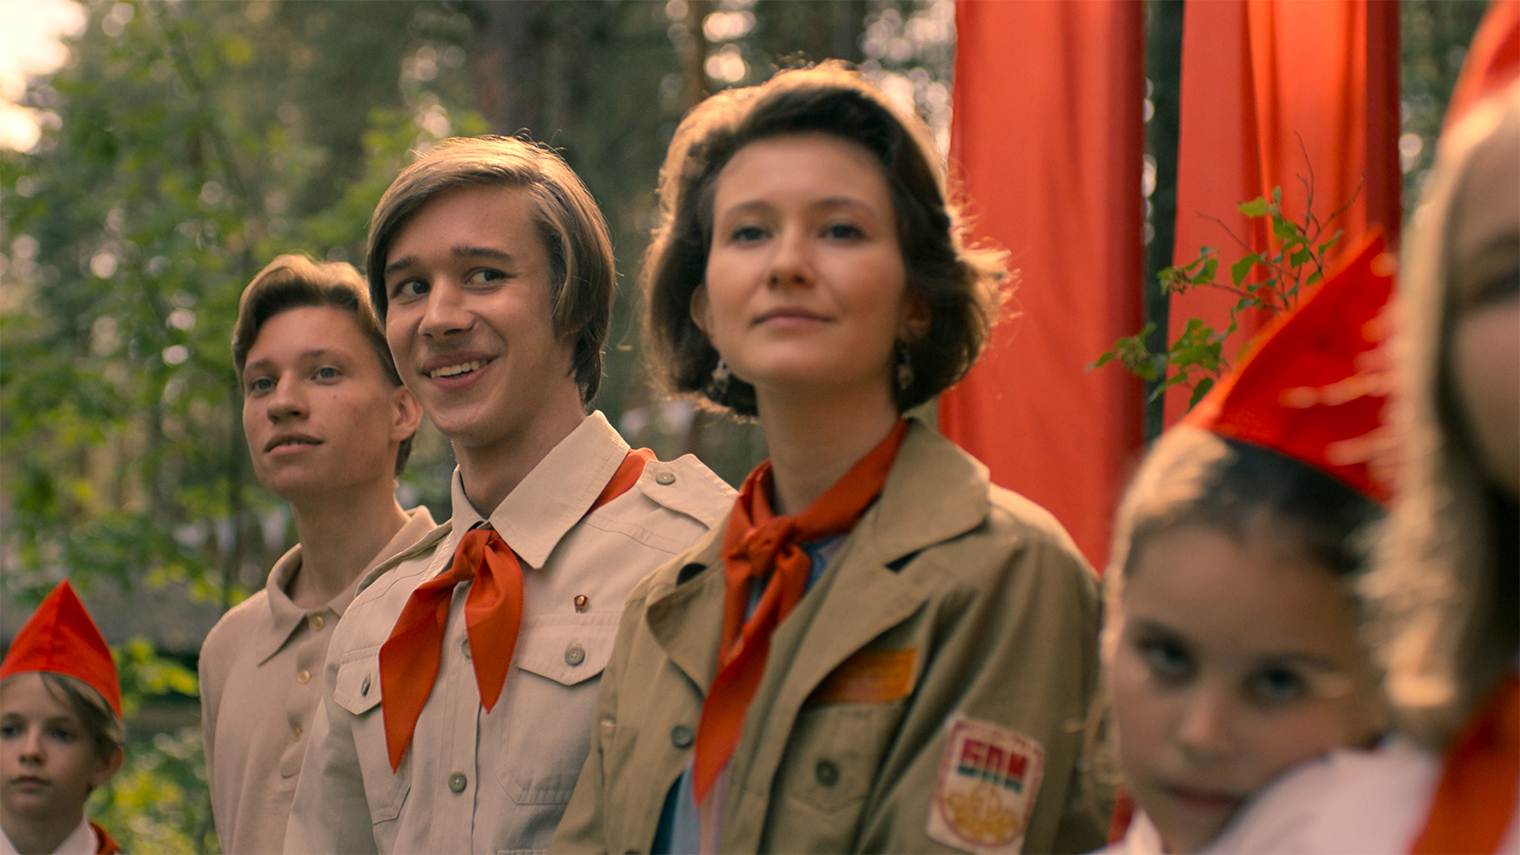 Действие сериала развивается в пионерлагере, поэтому на экране постоянно появляются символы советского времени: от красных галстуков до стильных плакатов